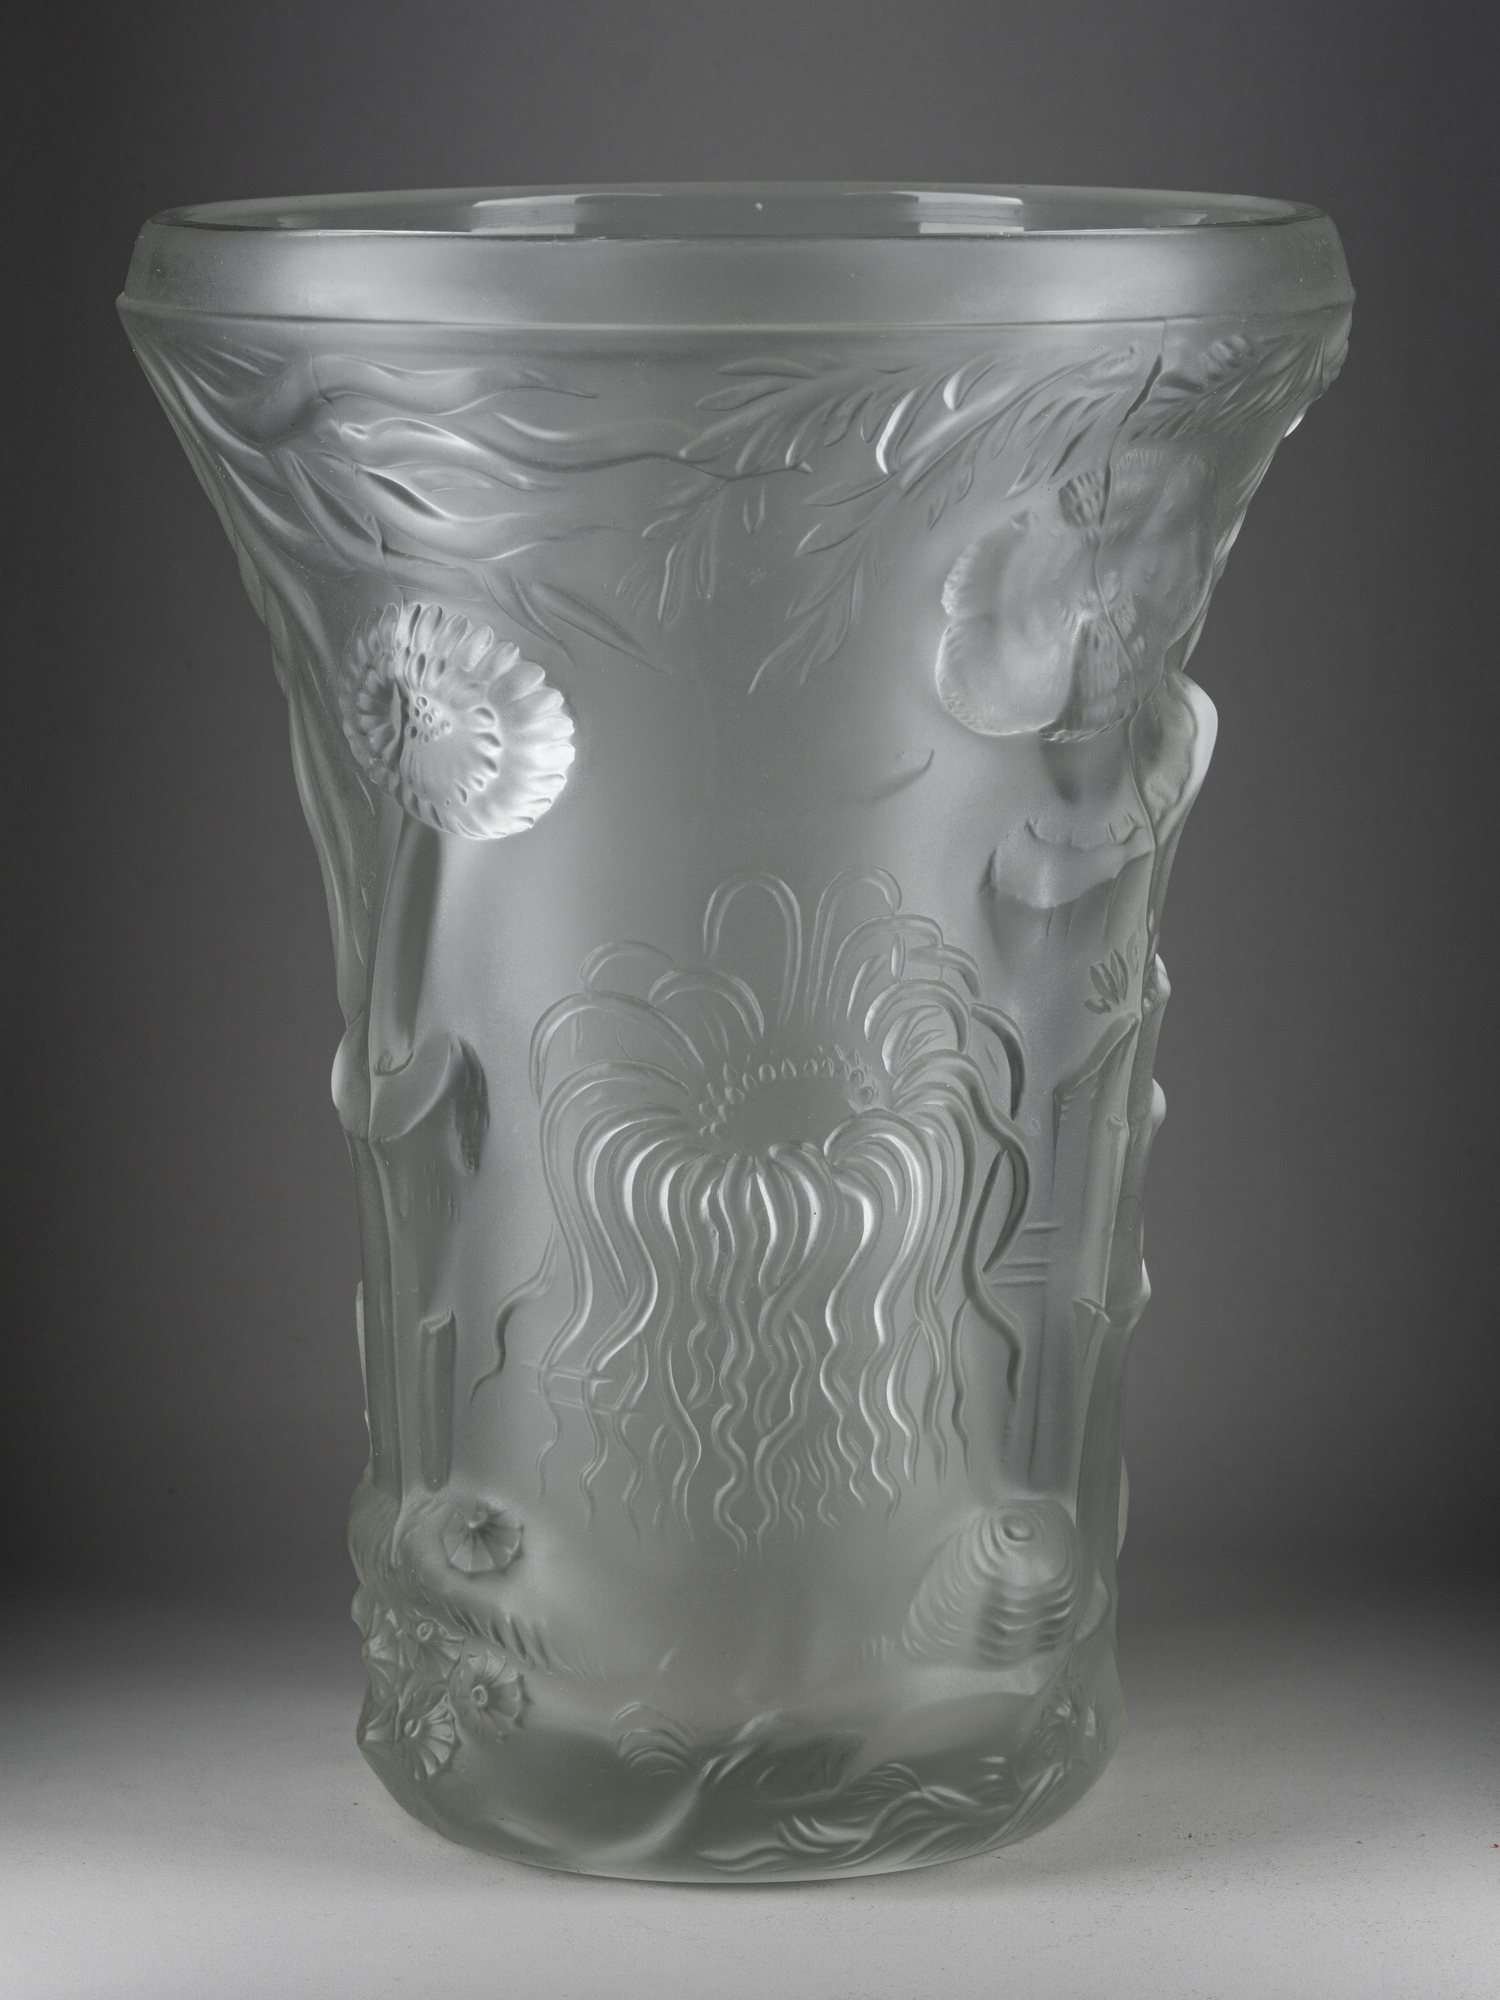 Большая ваза «Морская жизнь». <br>Франция, фирма Lalique, дизайн Йозефа Инвальда (?), конец 1920-начало 1930-х годов.